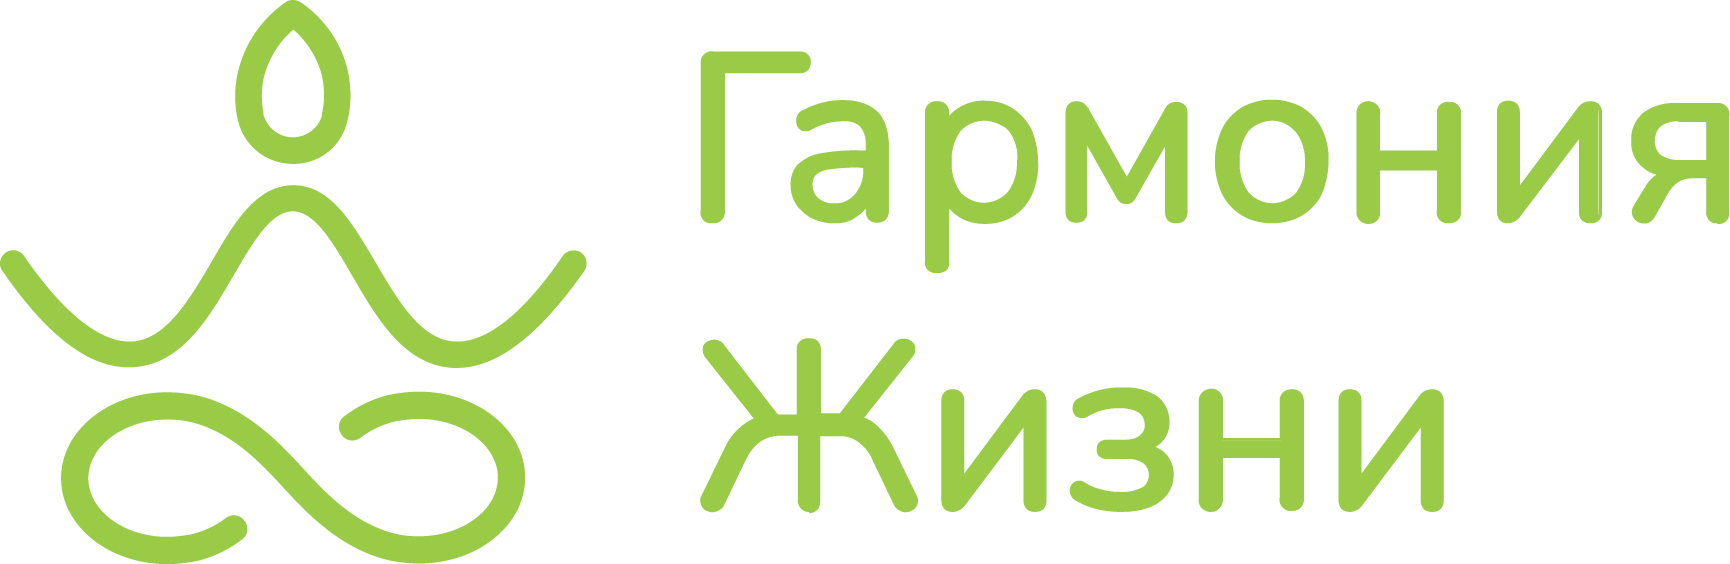 ООО ГАРМОНИЯ ЖИЗНИ - Поселок Бутово logo.png